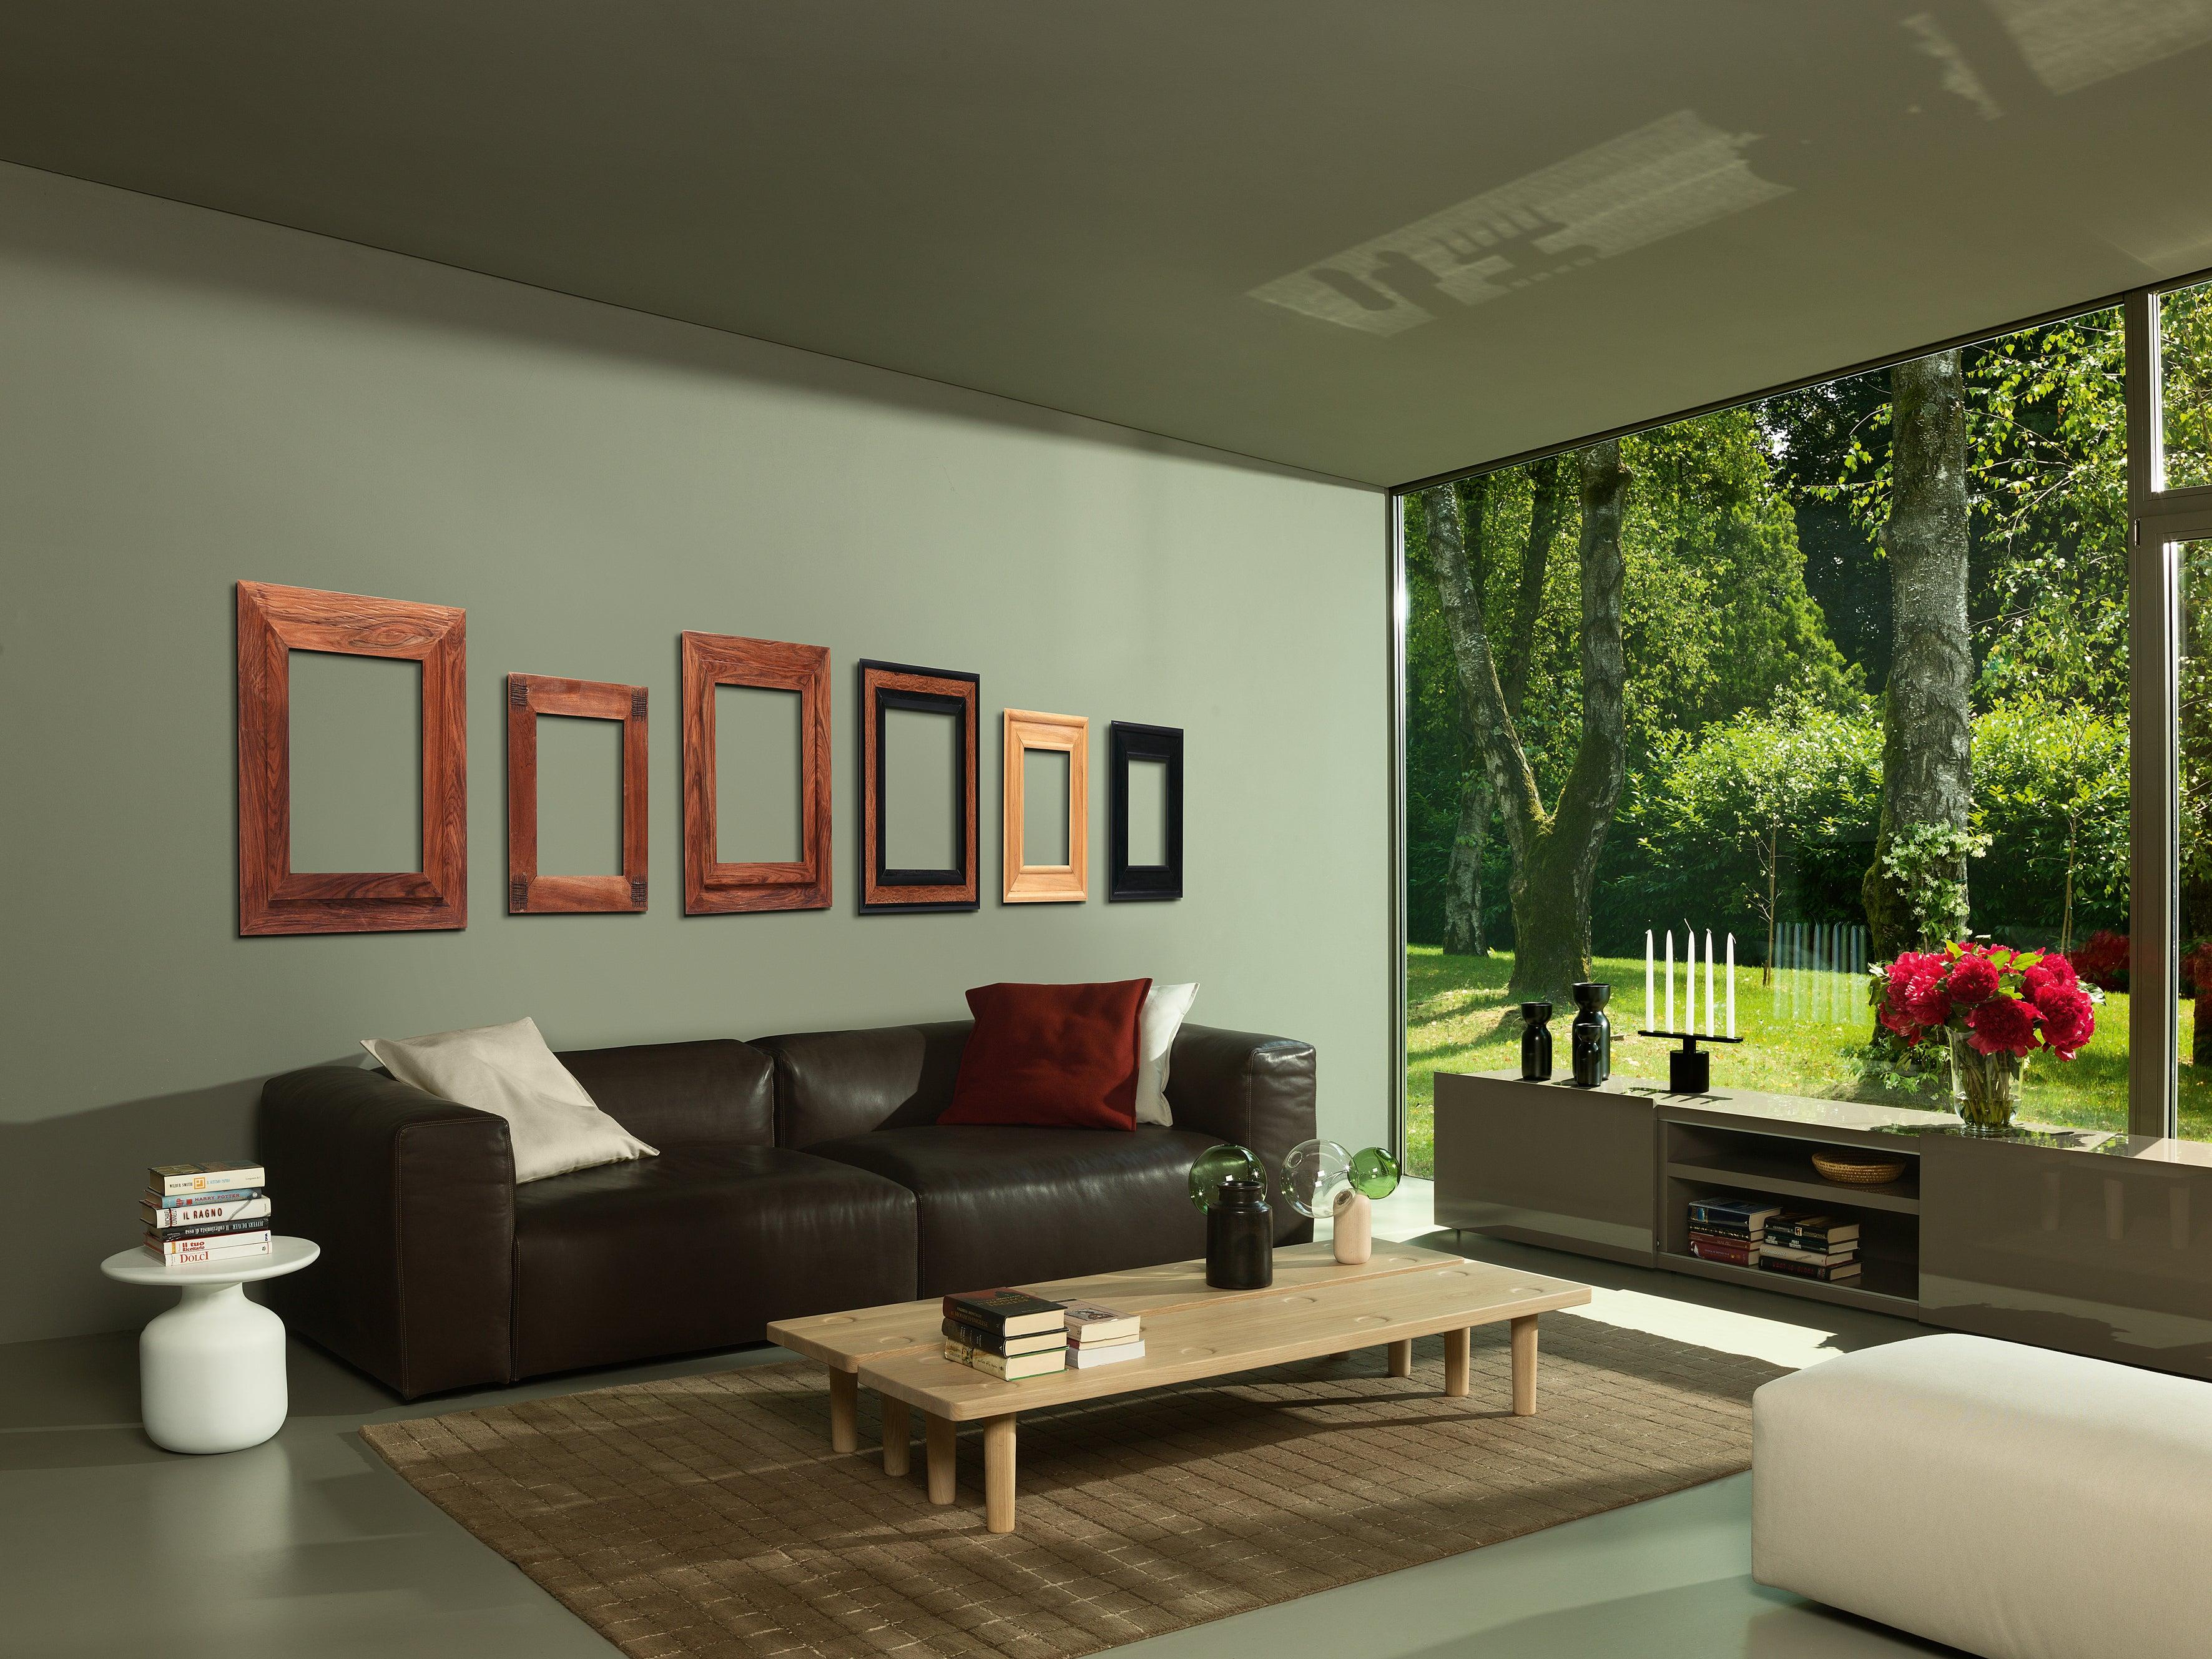 Die für den Wohn- und Objektbereich konzipierten oblong system sofas sind eine Serie von freistehenden und kompostierbaren Sitzmöbeln von Jasper Morrison, die die Möglichkeit bieten, individuelle zweiseitige Sofa Formations zu gestalten. Das